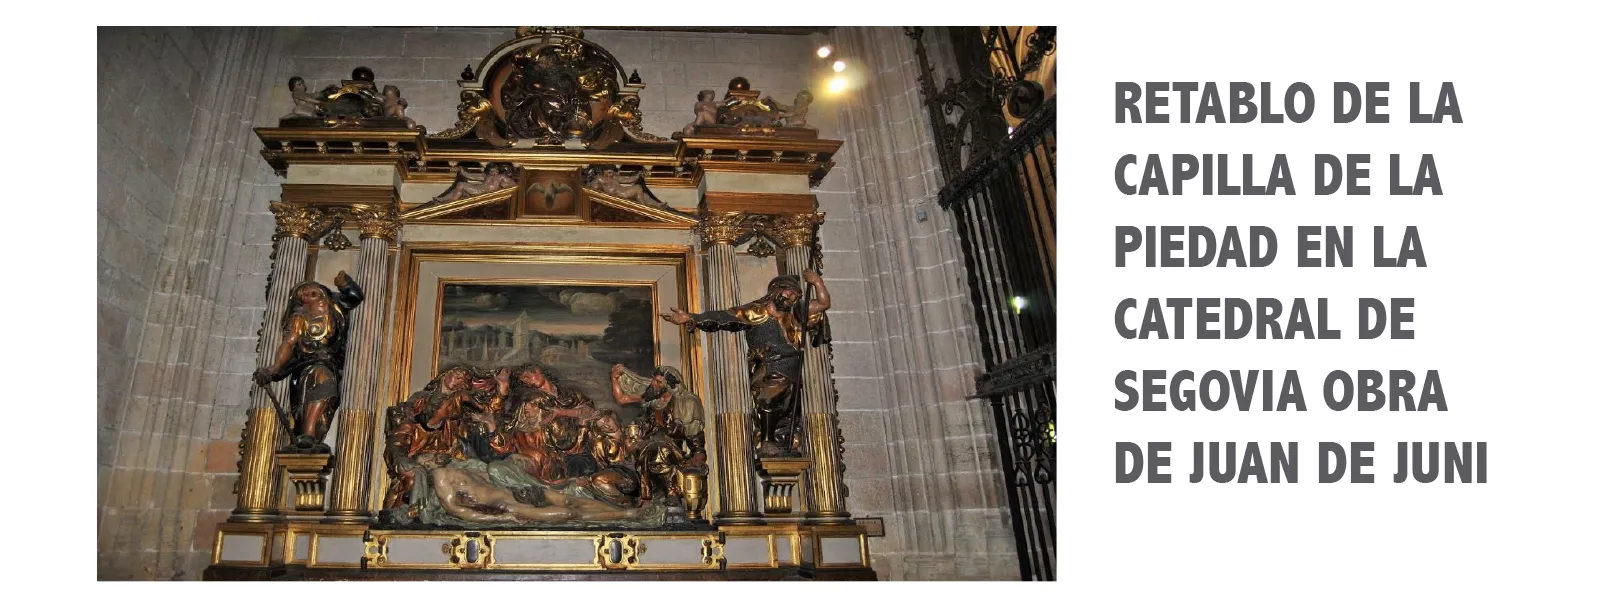 Retablo de la Capilla de la Piedad en la Catedral de Segovia